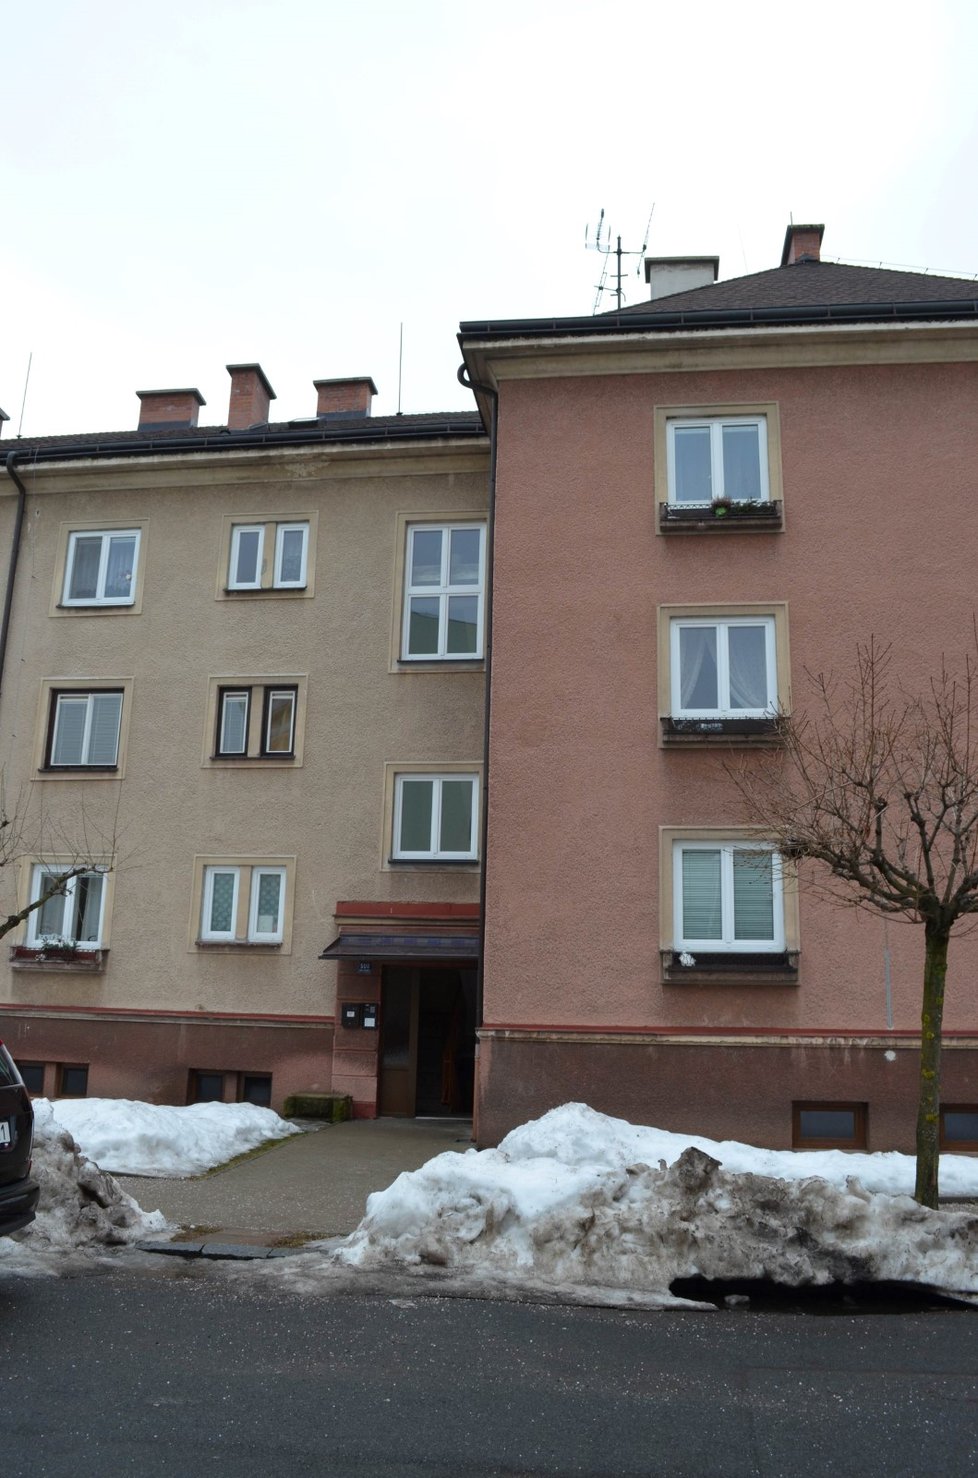 Dům v Trutnově, kde došlo k zavraždění seniorského páru.